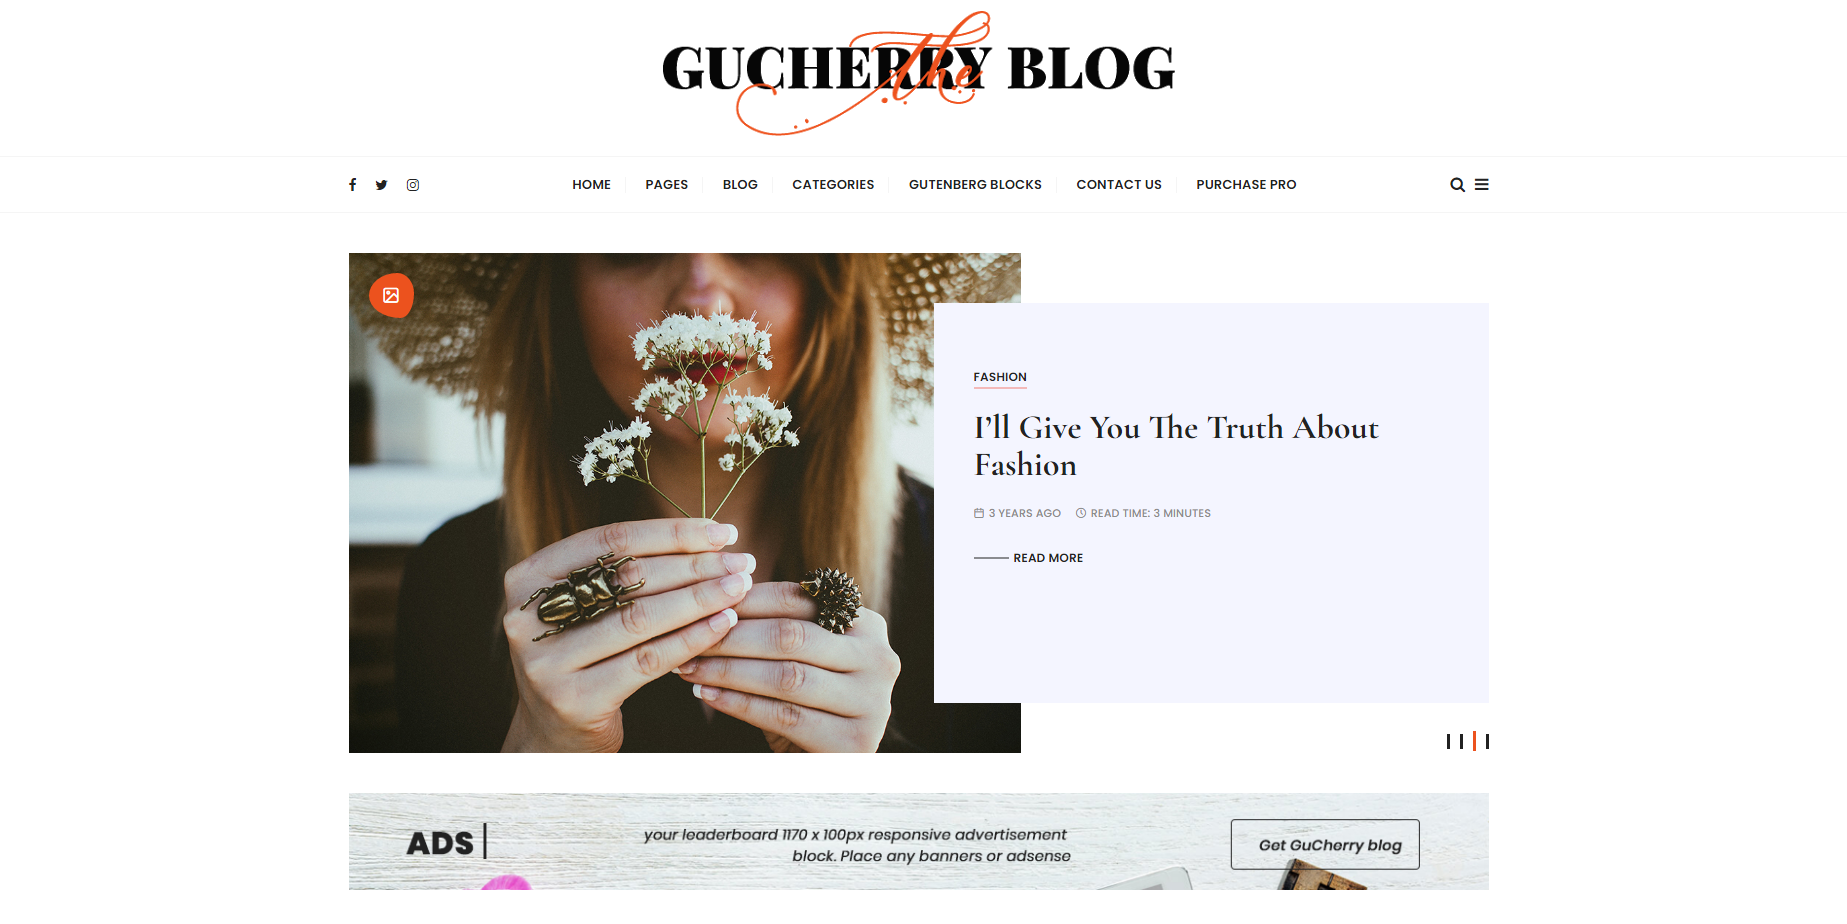 Gucherry blog - feminine WordPress themes